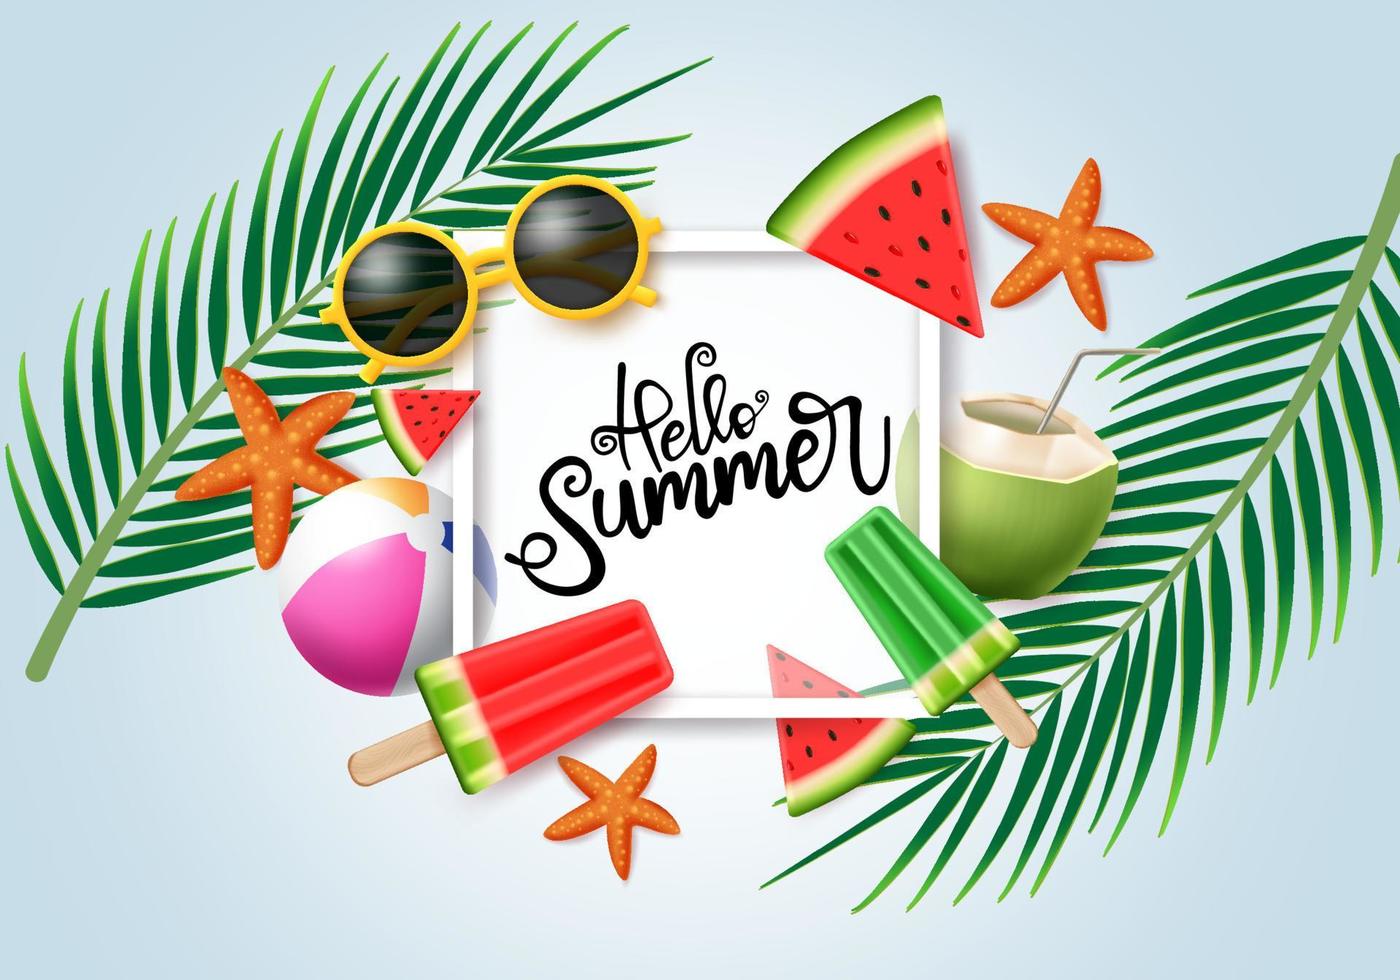 hallo zomer vector conceptontwerp. hallo zomertypografie in witte ruimte voor tekst met kleurrijke strandelementen zoals zonnebril, ijslolly, strandbal, kokosnoot op palmbladerenachtergrond.